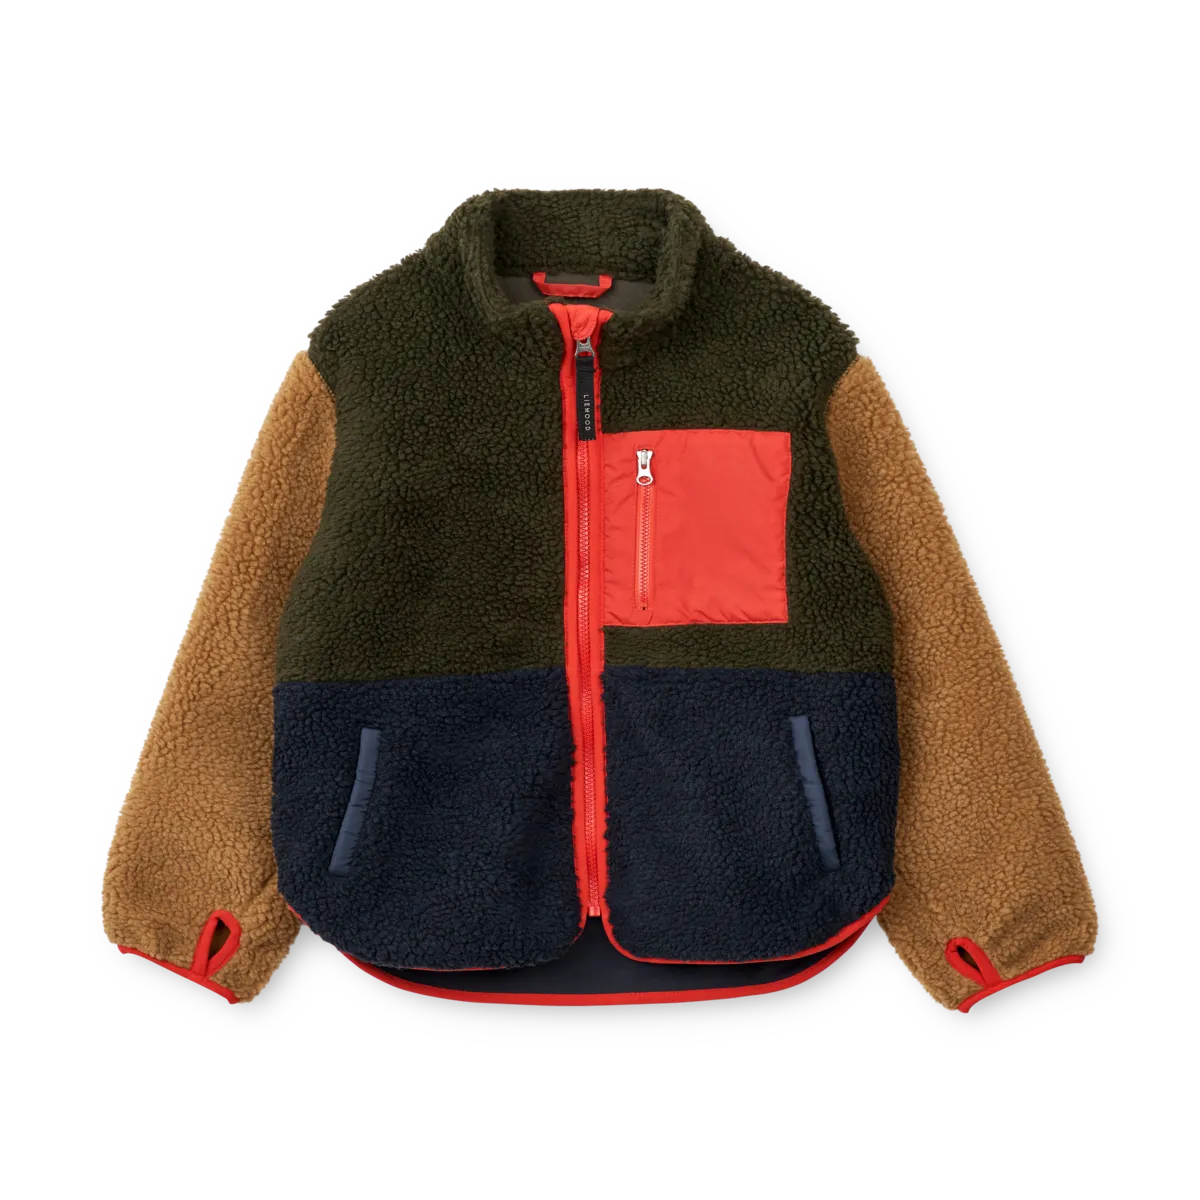 Skogstad Alnes fleece jacket